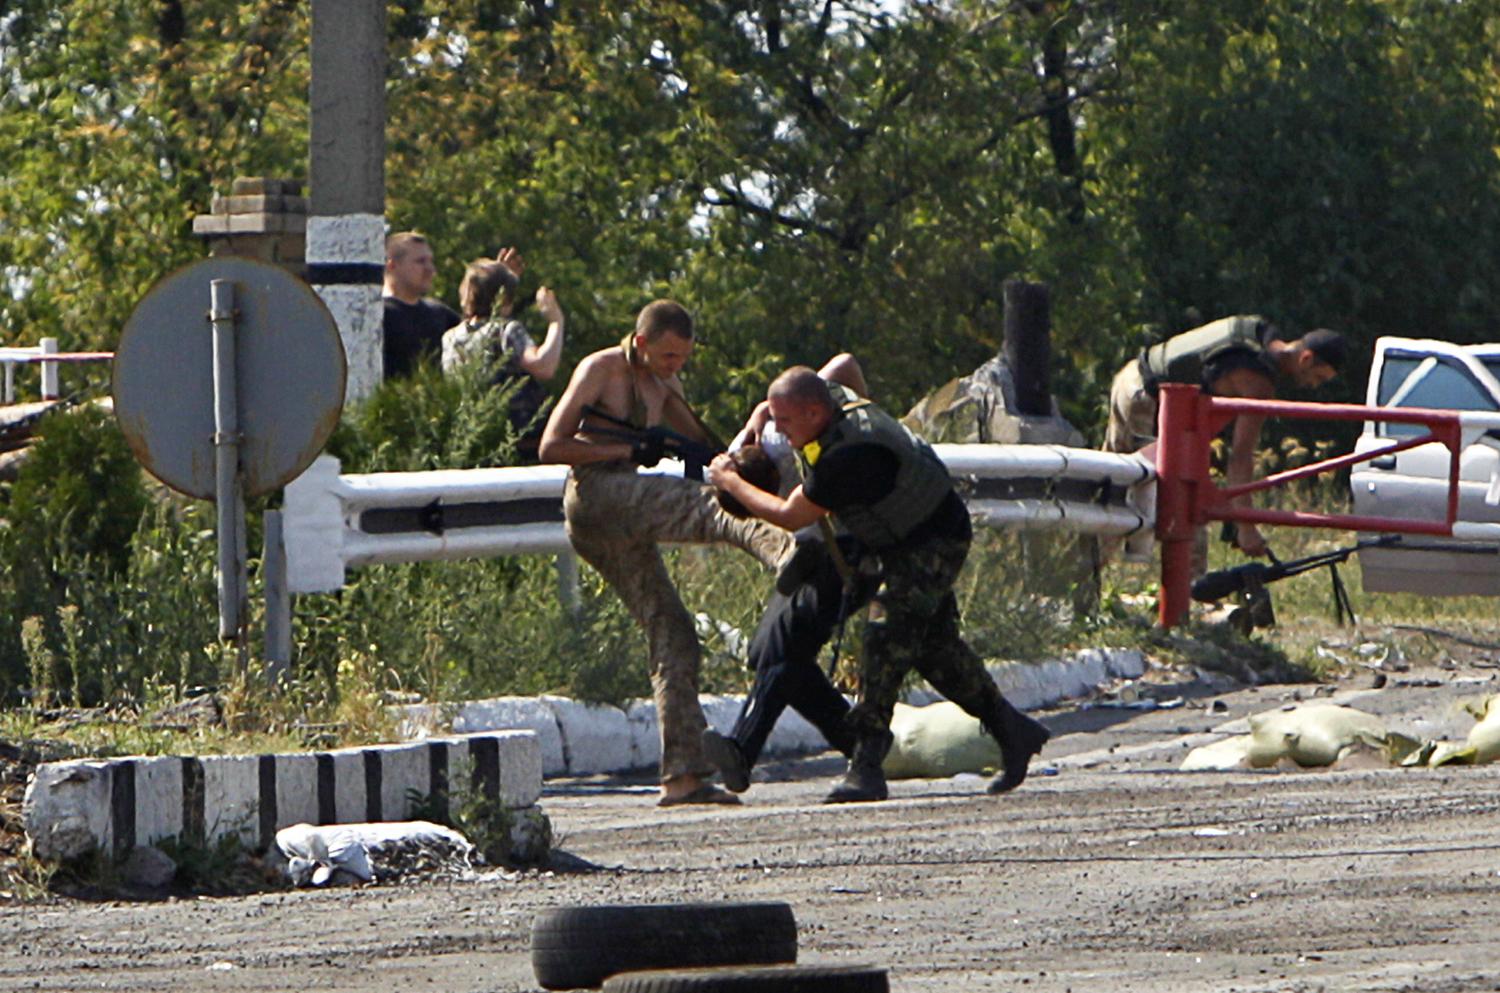 Oroszbarát szeparatistát vesznek őrizetbe ukrán katonák egy utcai ellenőrző ponton